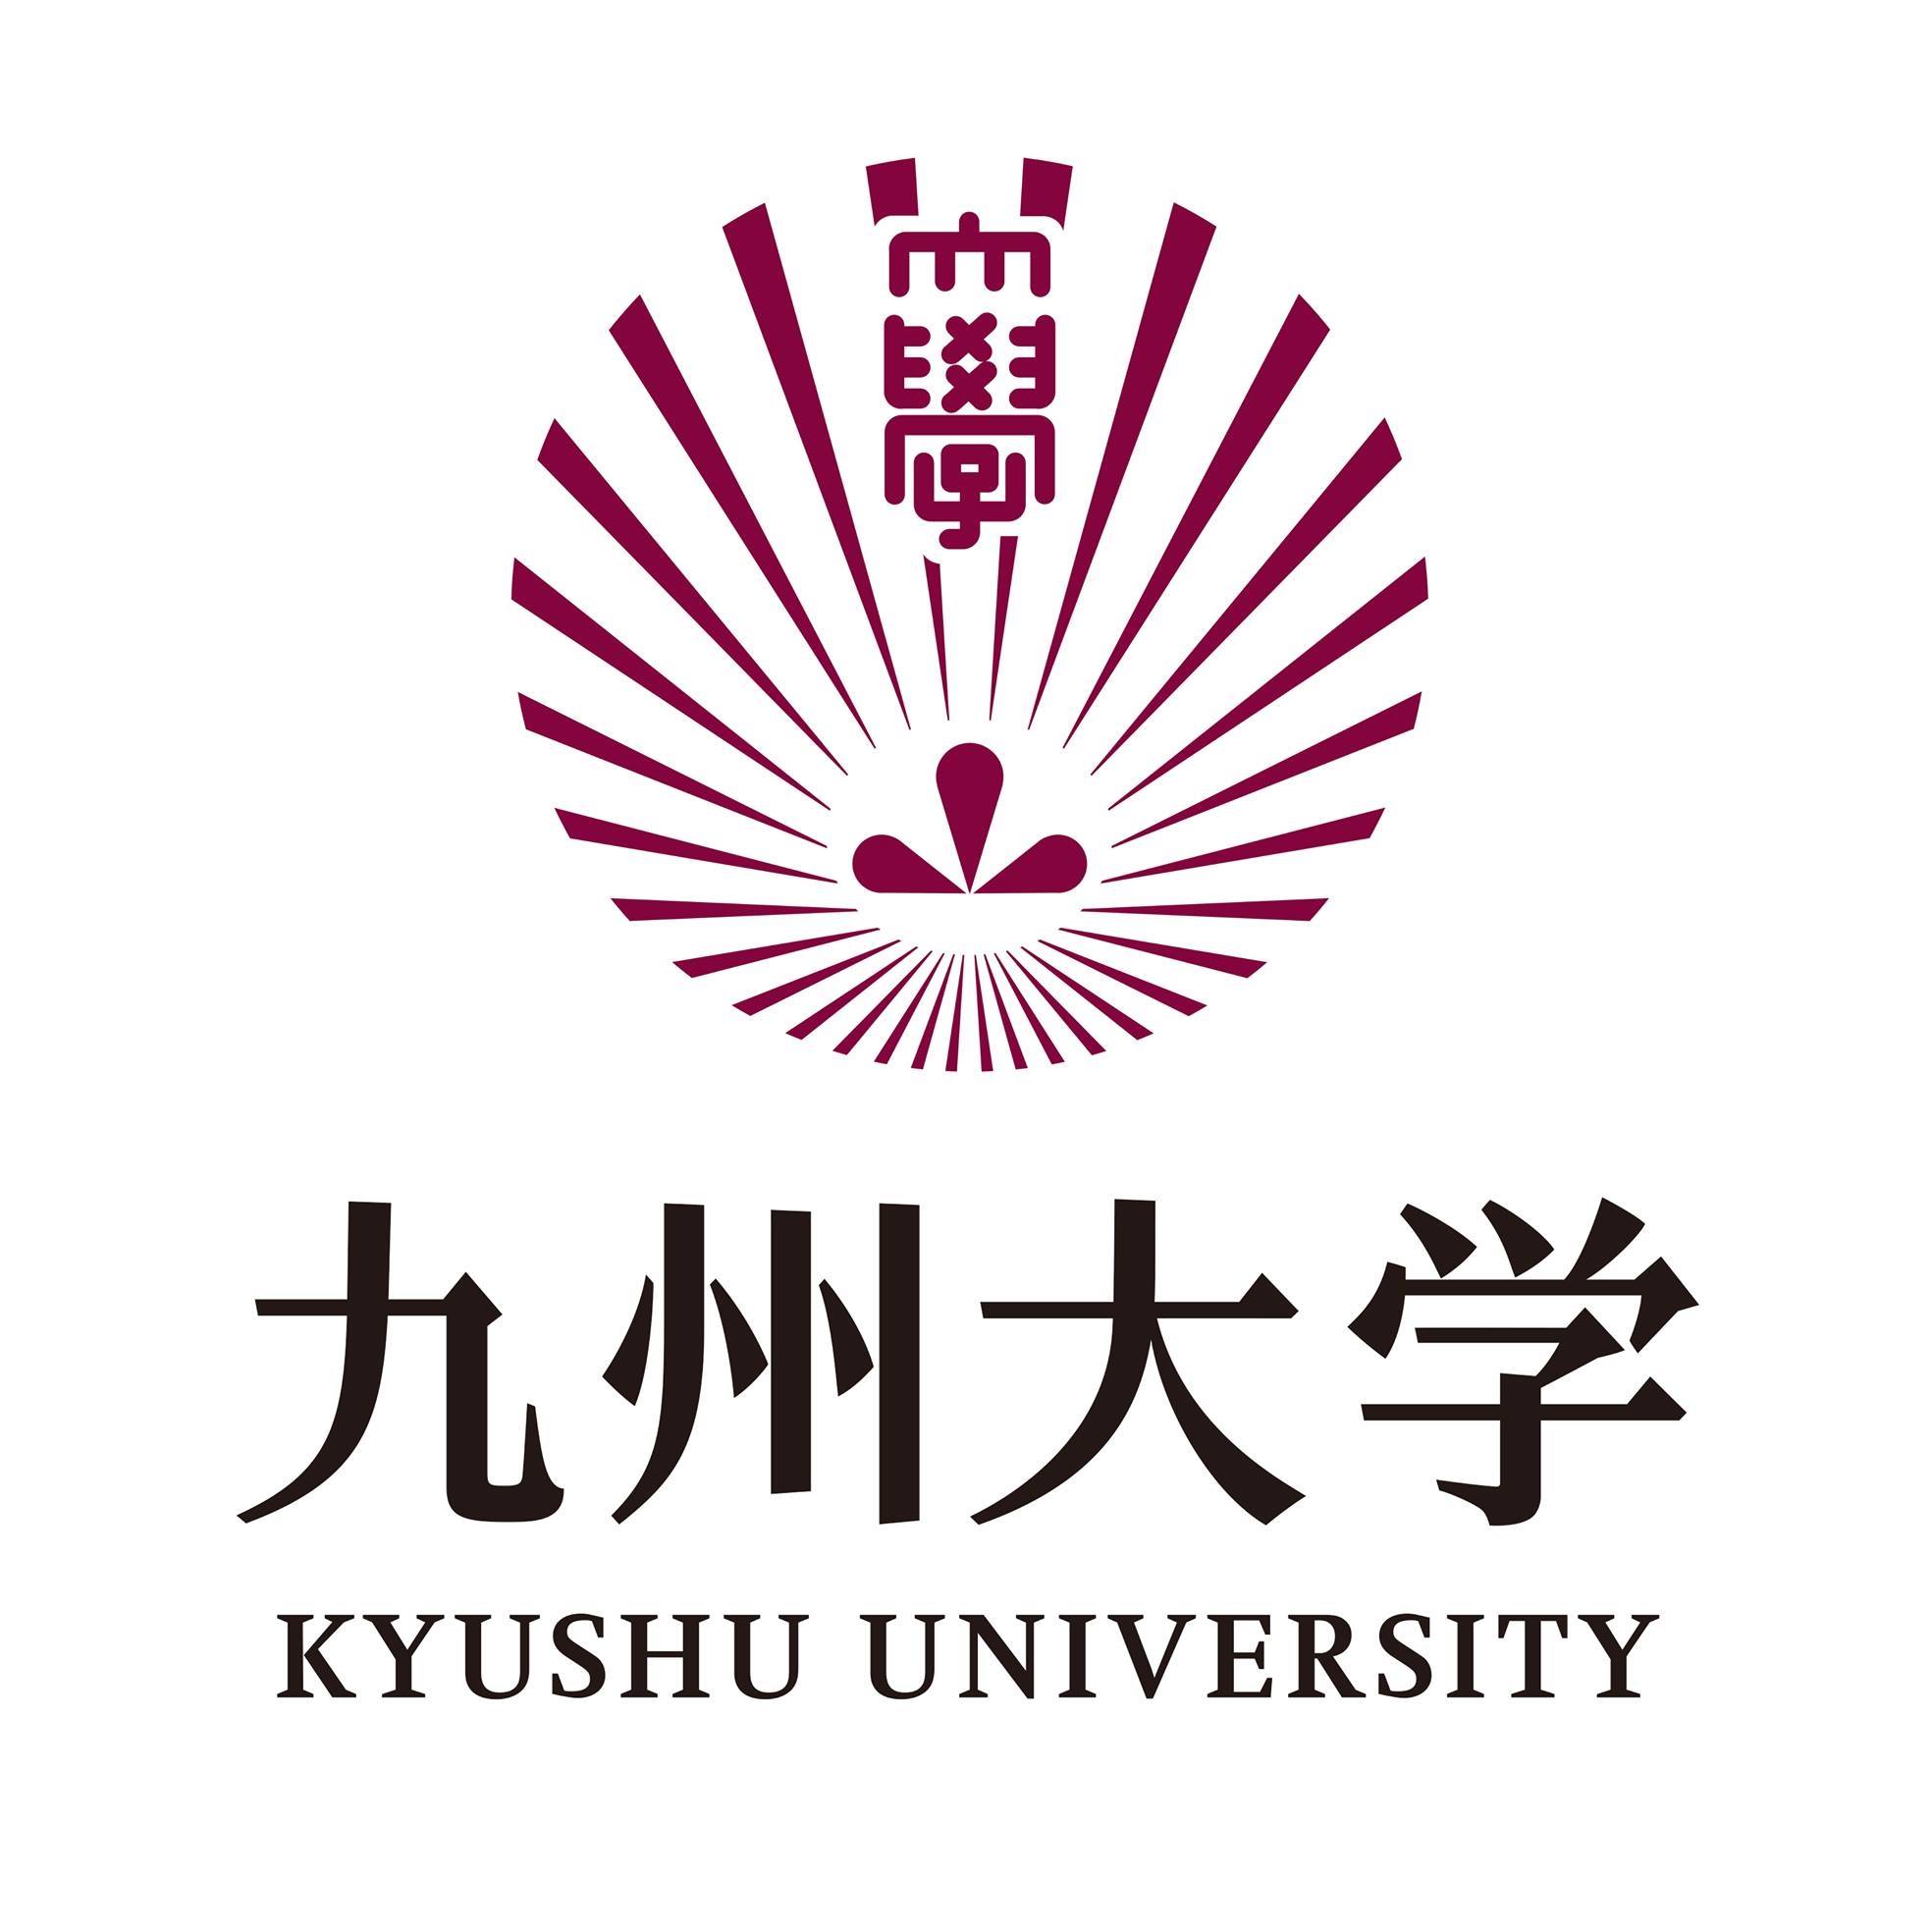 Kyushu University